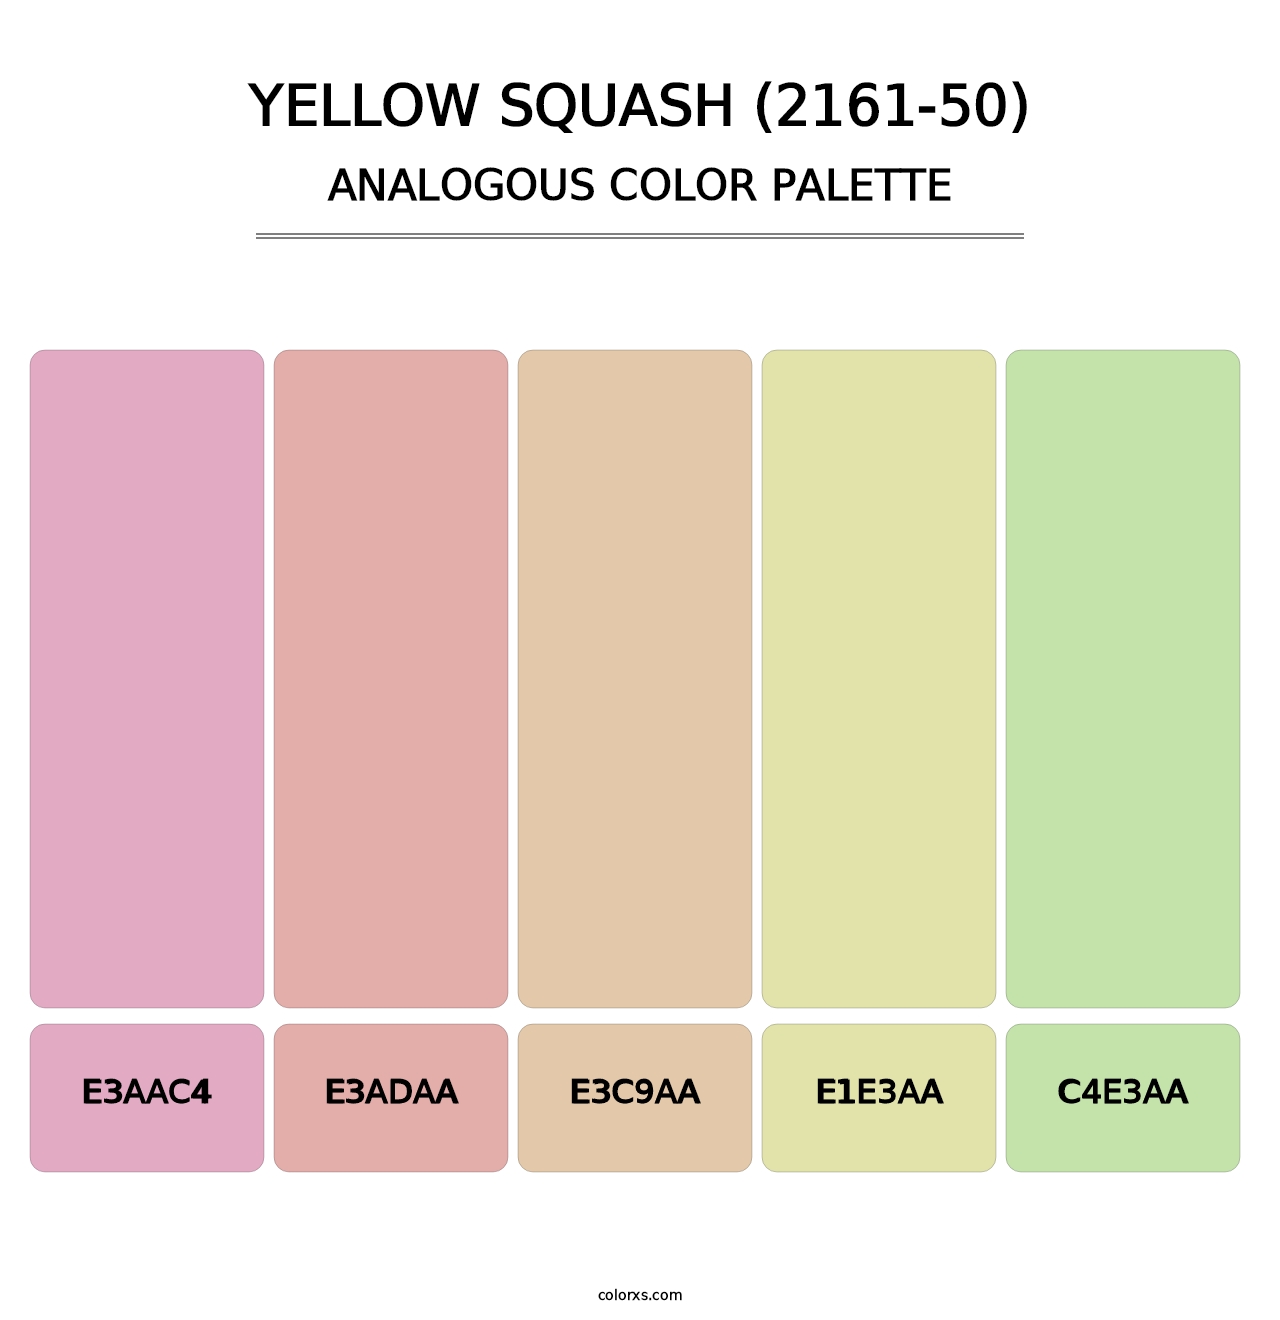 Yellow Squash (2161-50) - Analogous Color Palette